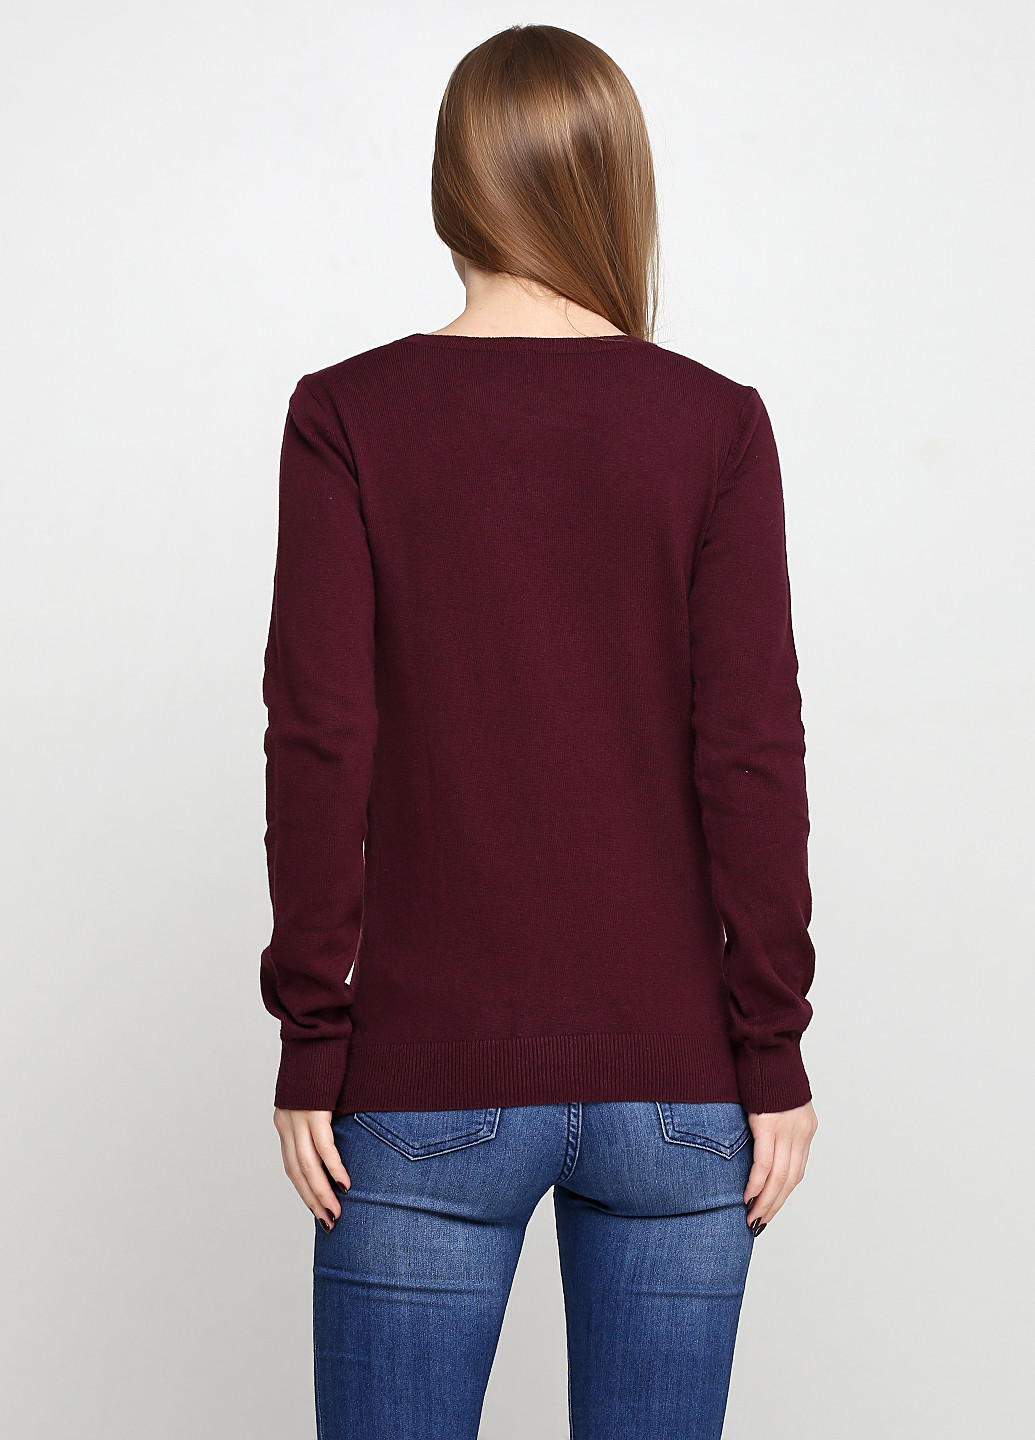 Бордовый демисезонный пуловер пуловер Colours